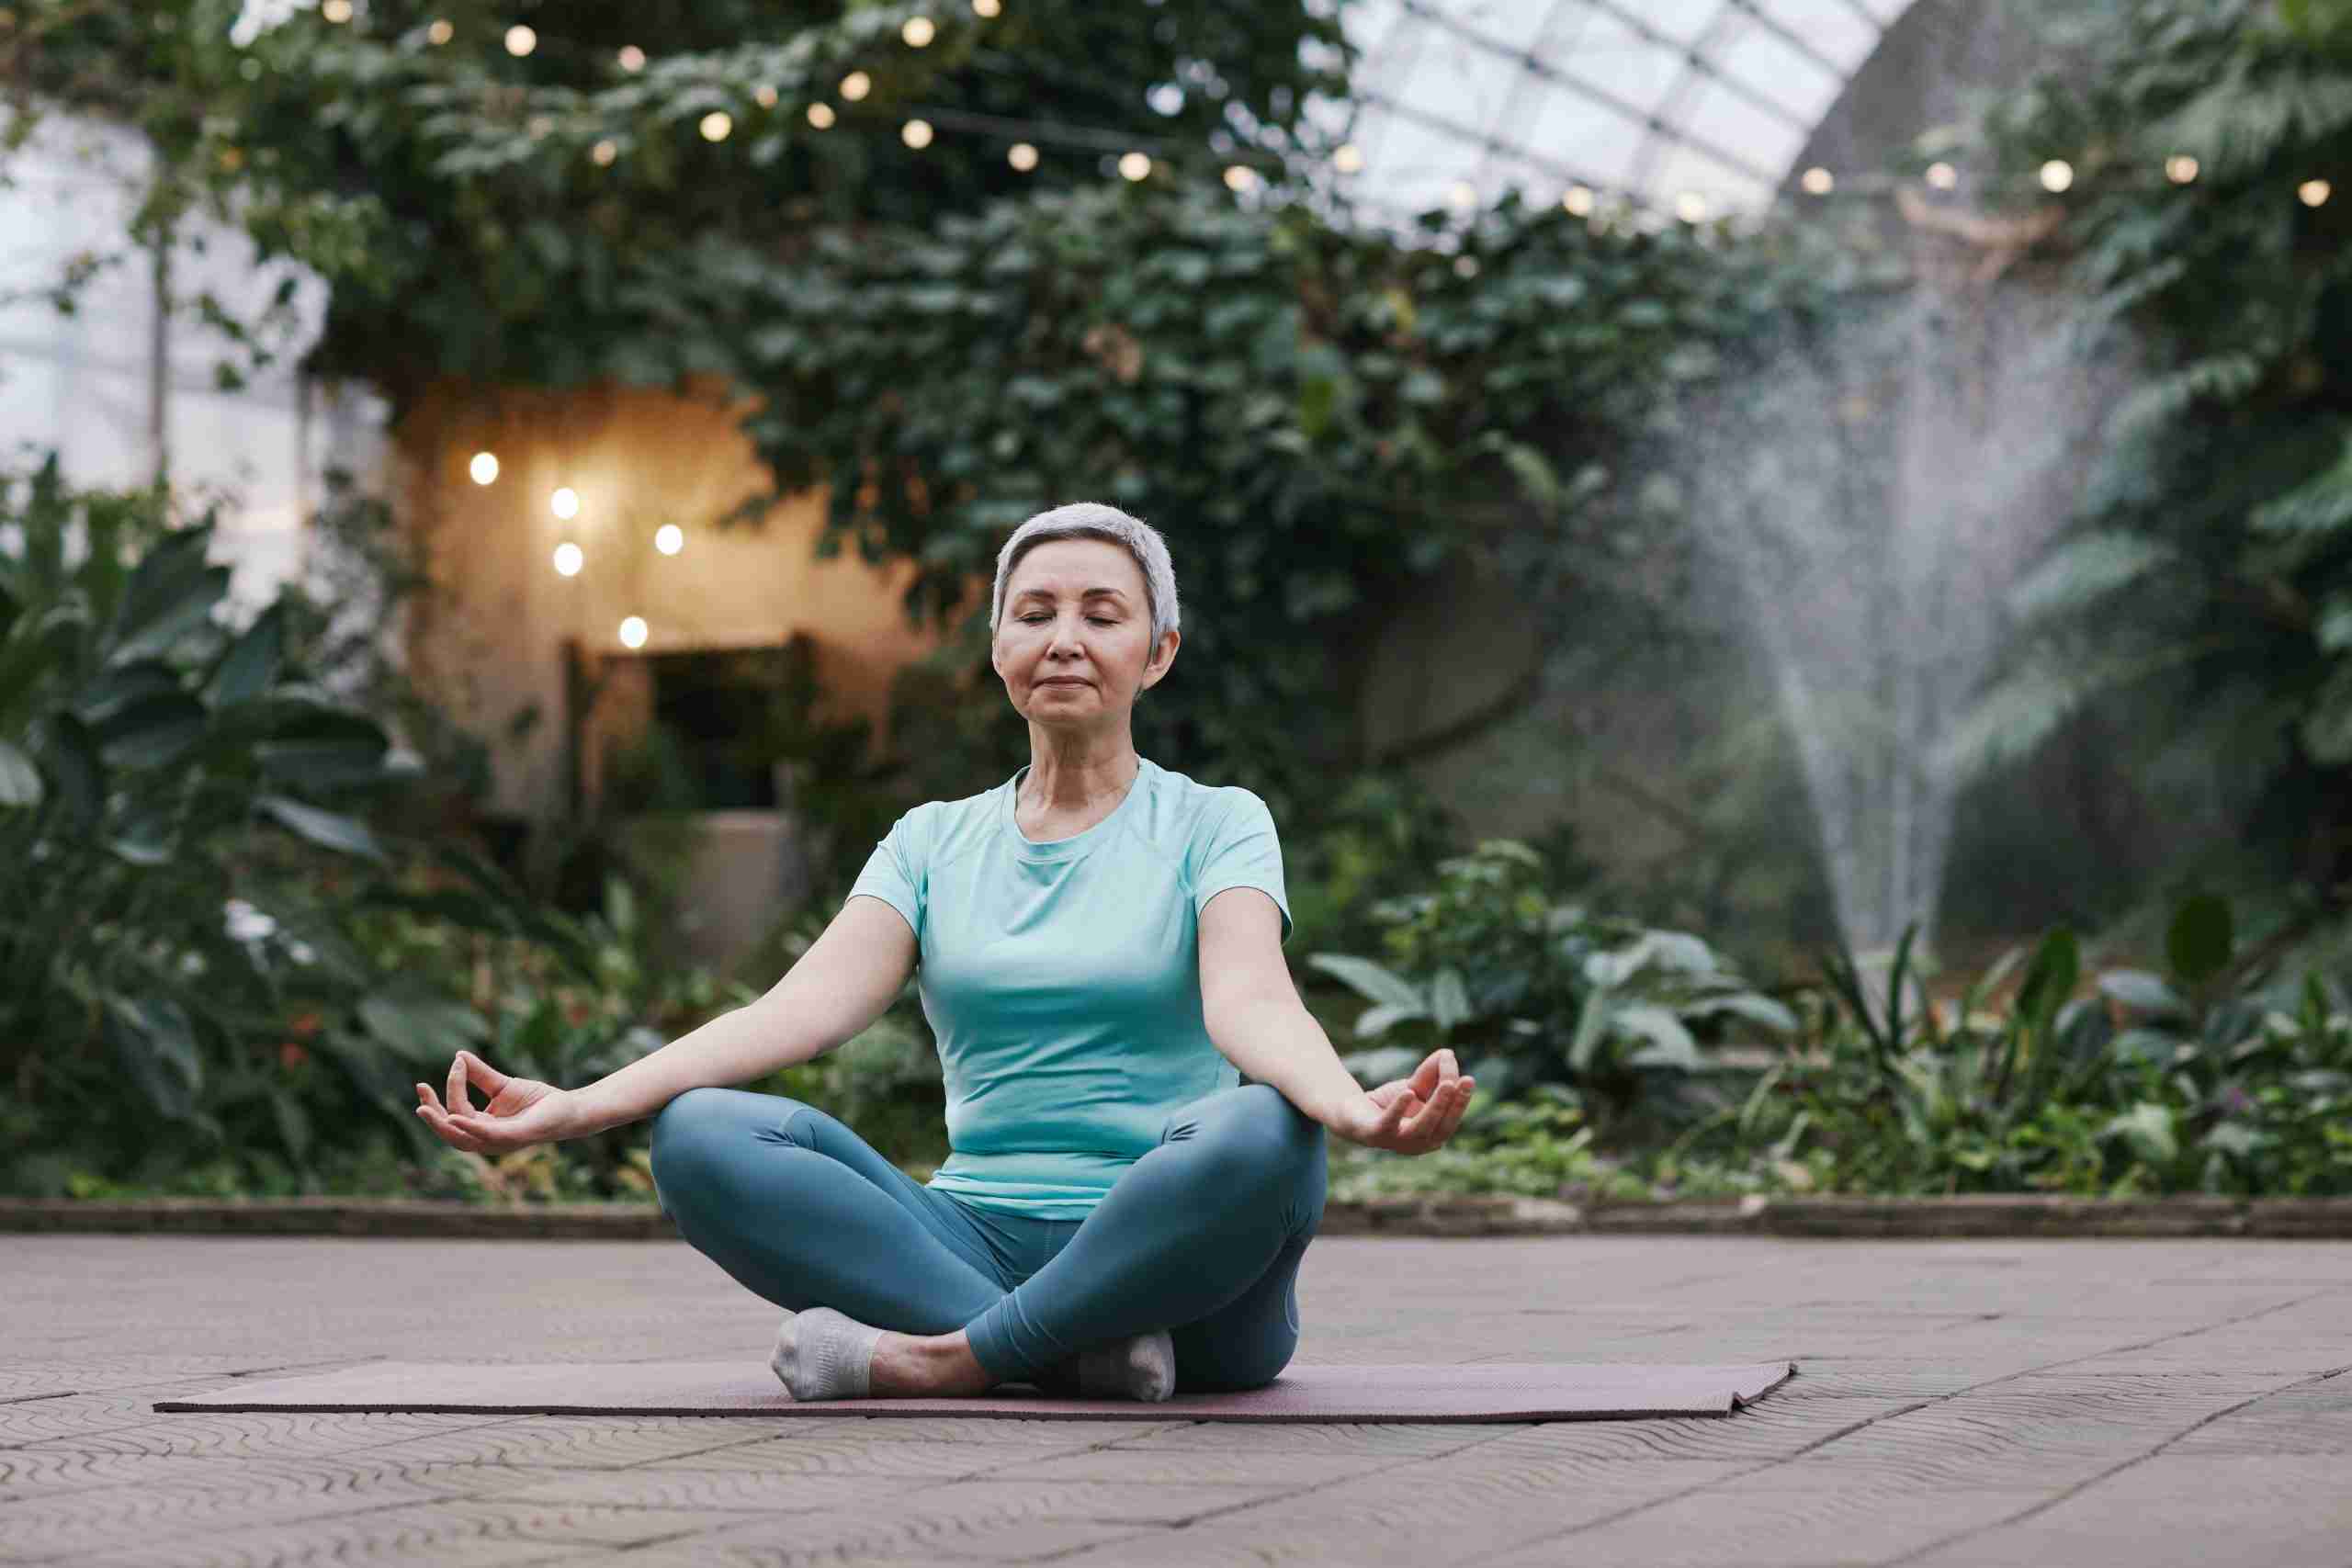 eldre dame sitter på yogamatten og mediterer i den grønne, vakre hagen helse og skjønnhet https://before-night-falls.com/